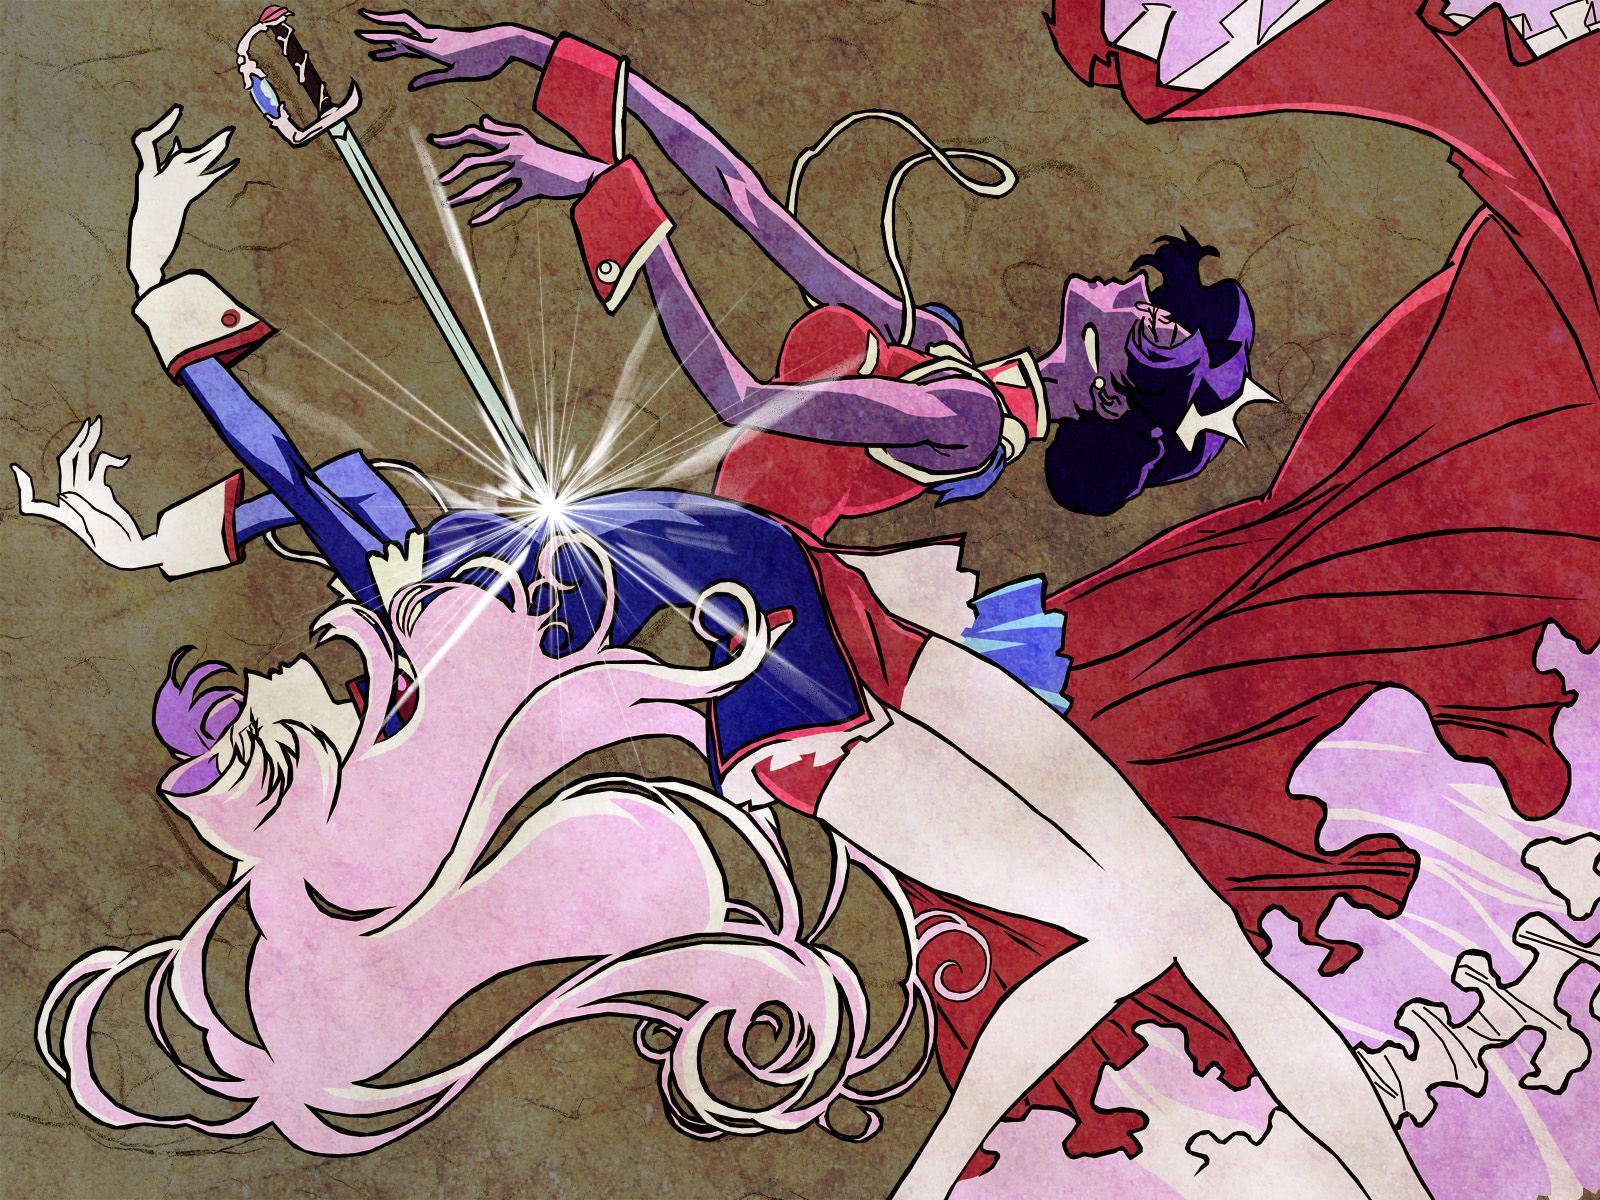 Revolutionary Girl Utena HD Wallpaper. Revolutionary girl utena, Utena, Anime